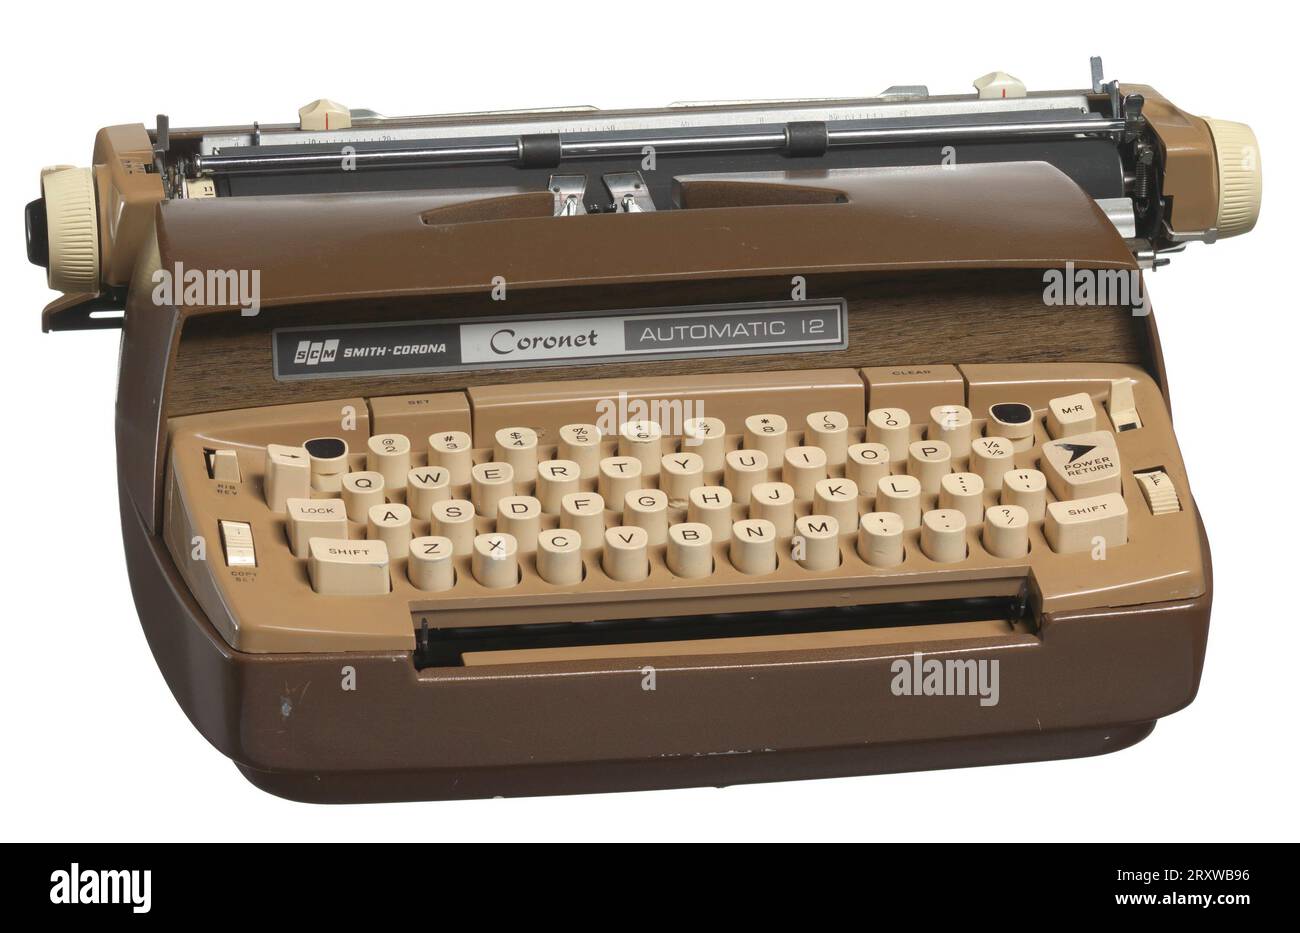 Una macchina da scrivere marrone scuro e chiaro con tasti bianchi. Nella parte anteriore della macchina da scrivere è presente un pannello di legno con un'etichetta che riporta ¿SCM / SMITH-CORONA / Coronet / AUTOMATIC 12.¿ la macchina da scrivere è elettrica e ha un cavo e una spina bianchi. In bianco sul retro della macchina da scrivere è ¿SCM / SMITH-CORONA / MADE IN U.S.A.¿ un nastro d'inchiostro ancora attaccato alla macchina da scrivere. Foto Stock